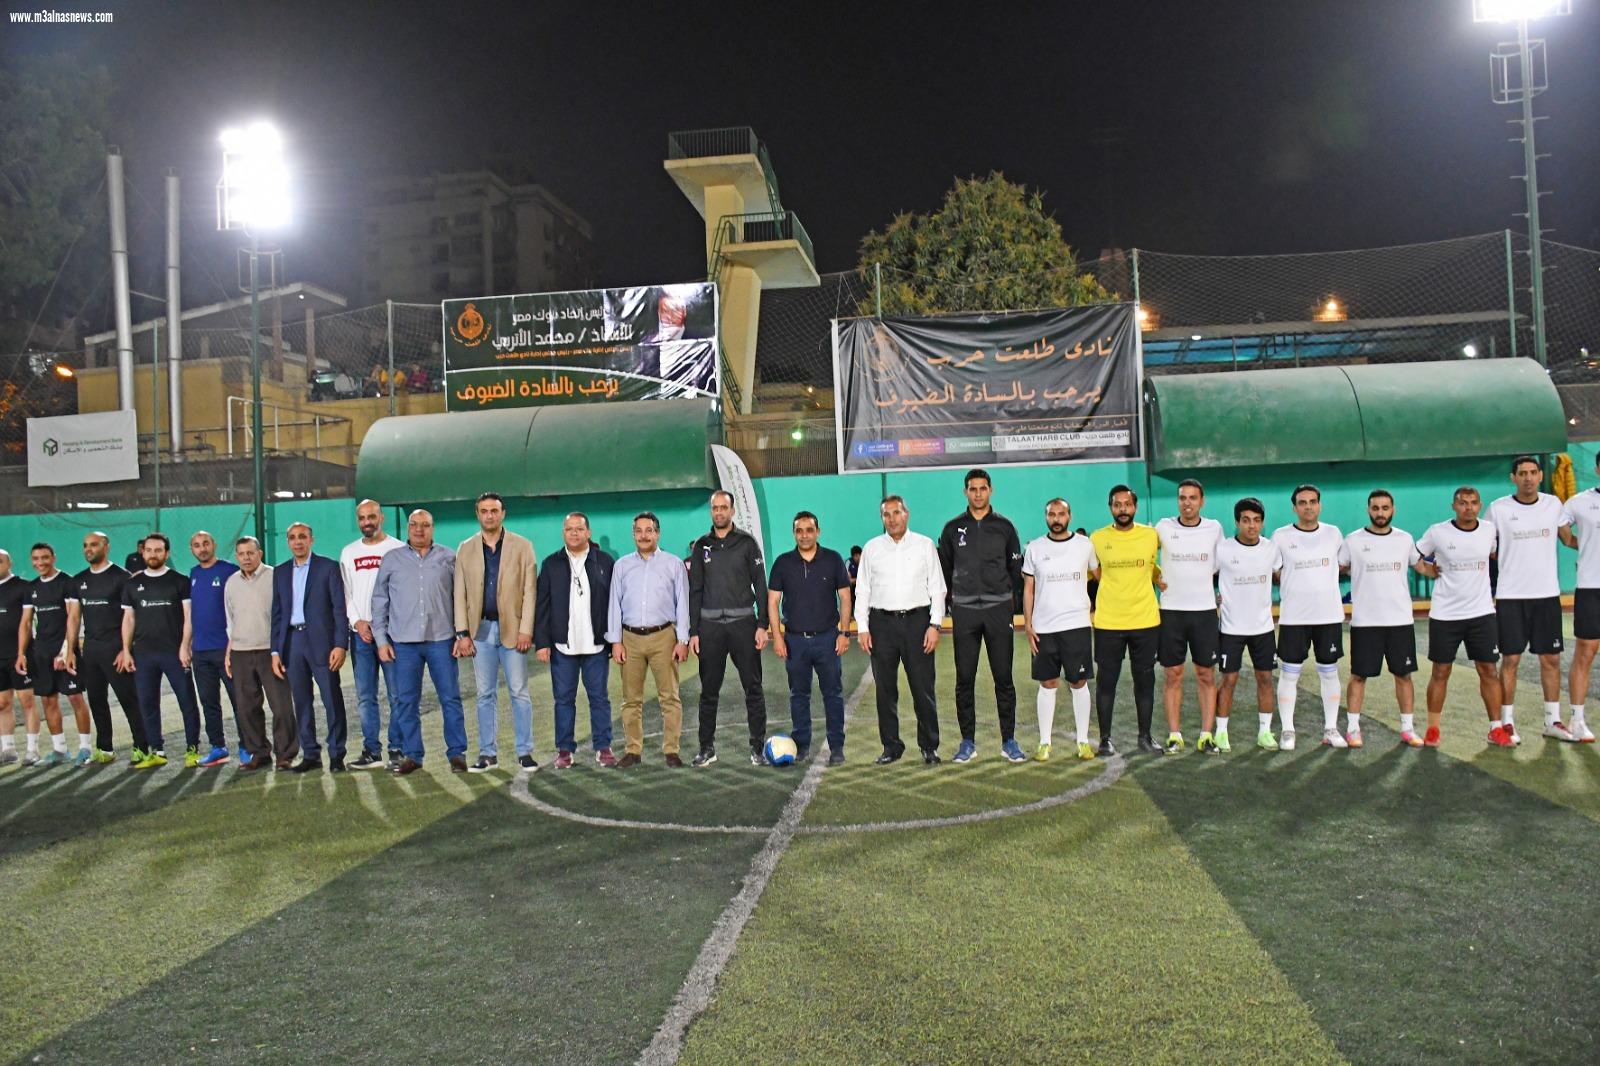 بعد نجاح النسخة الأولى.. انطلاق النسخة الثانية لدورى البنوك لخماسيات كرة القدم فى رمضان